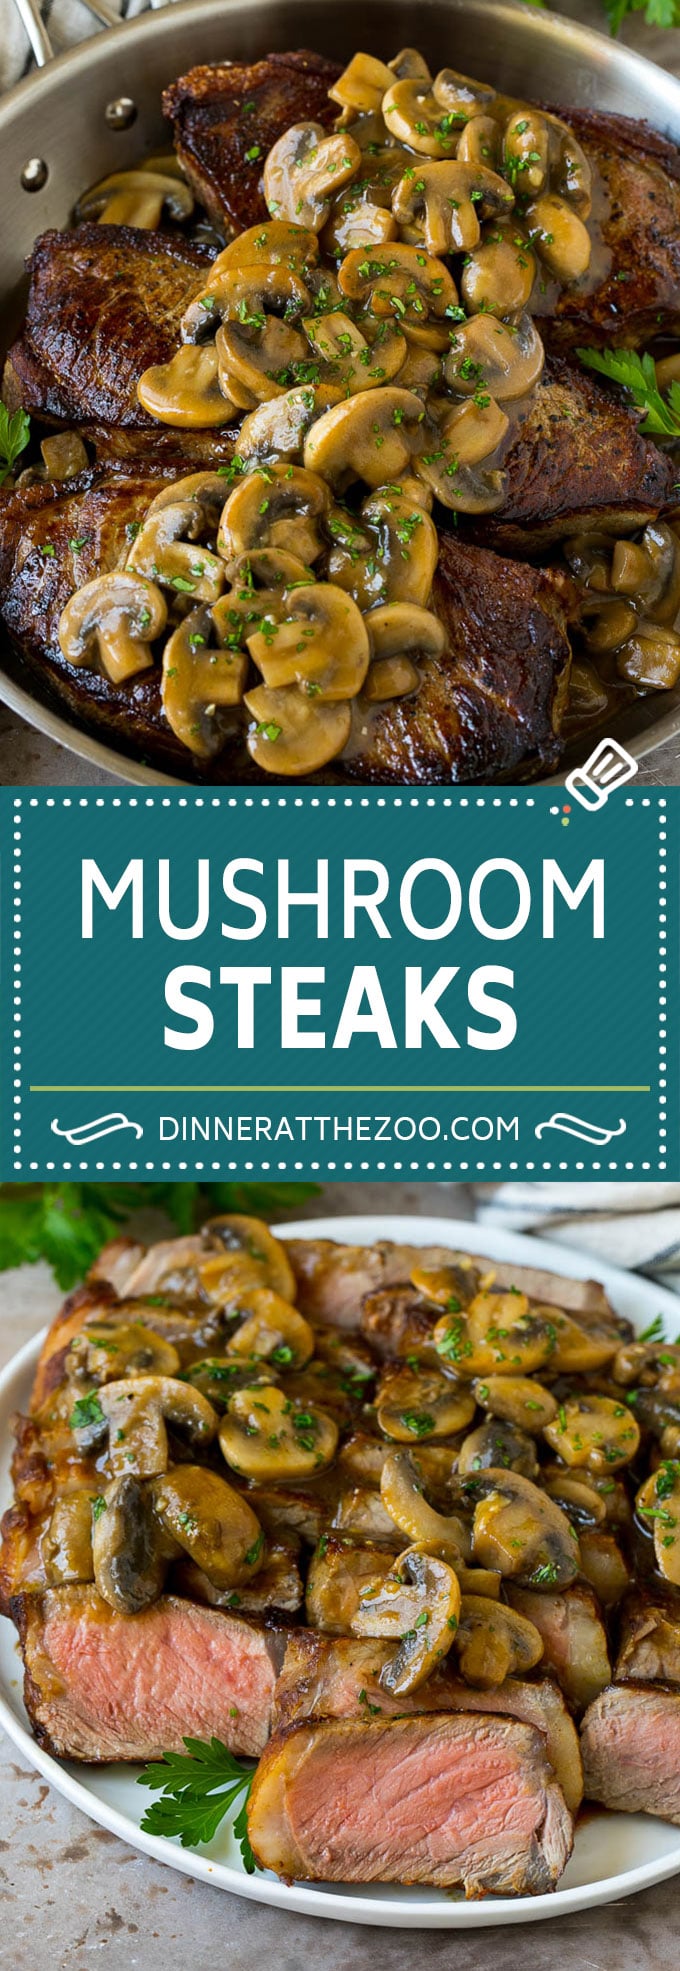 Mushroom Steak Sauce Recipe #mushrooms #steak #beef #dinner #dinneratthezoo